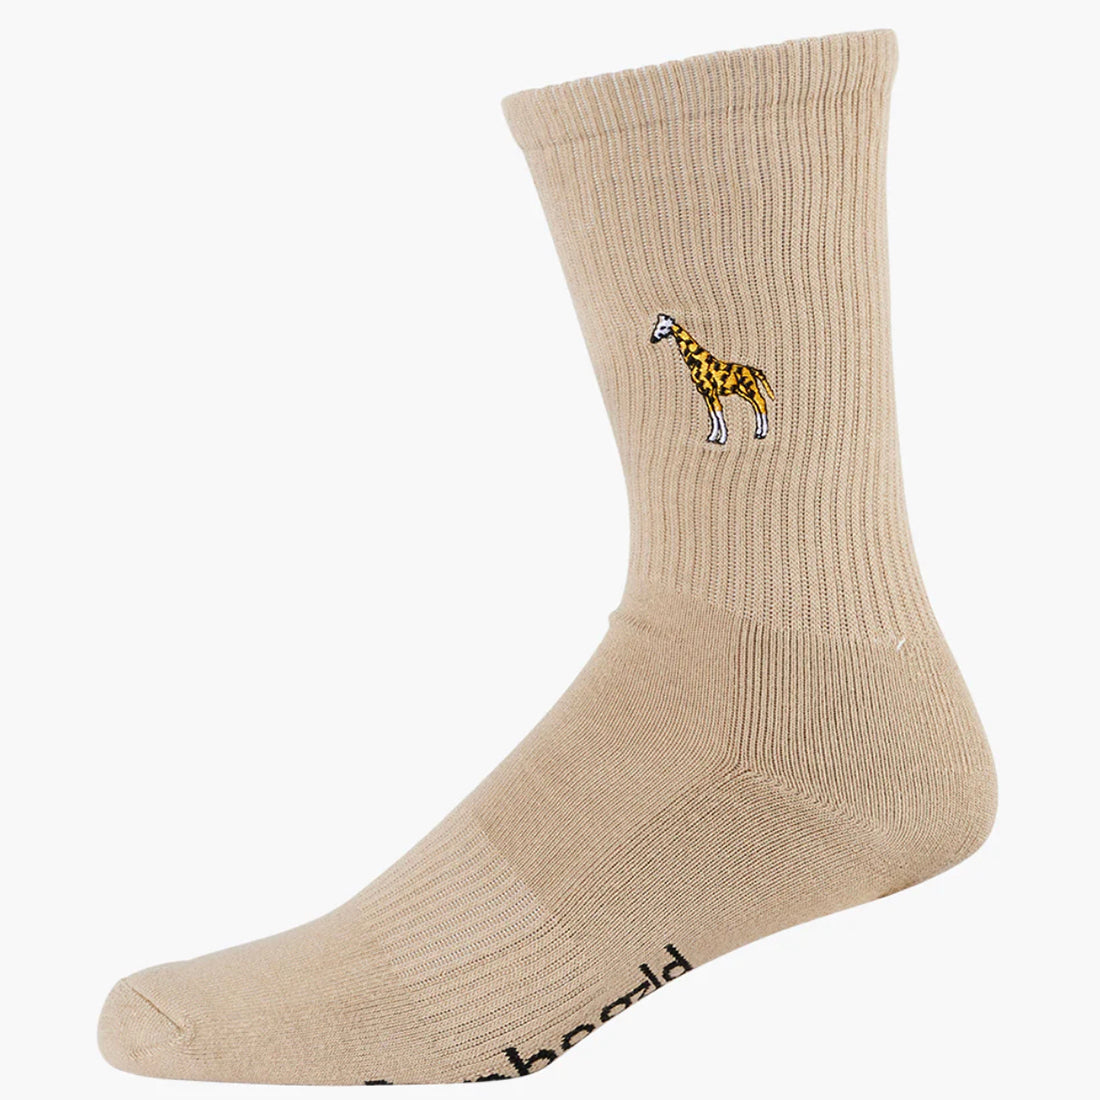 Bamboo Men's Socks - Giraffe Zoo Conservation Socks